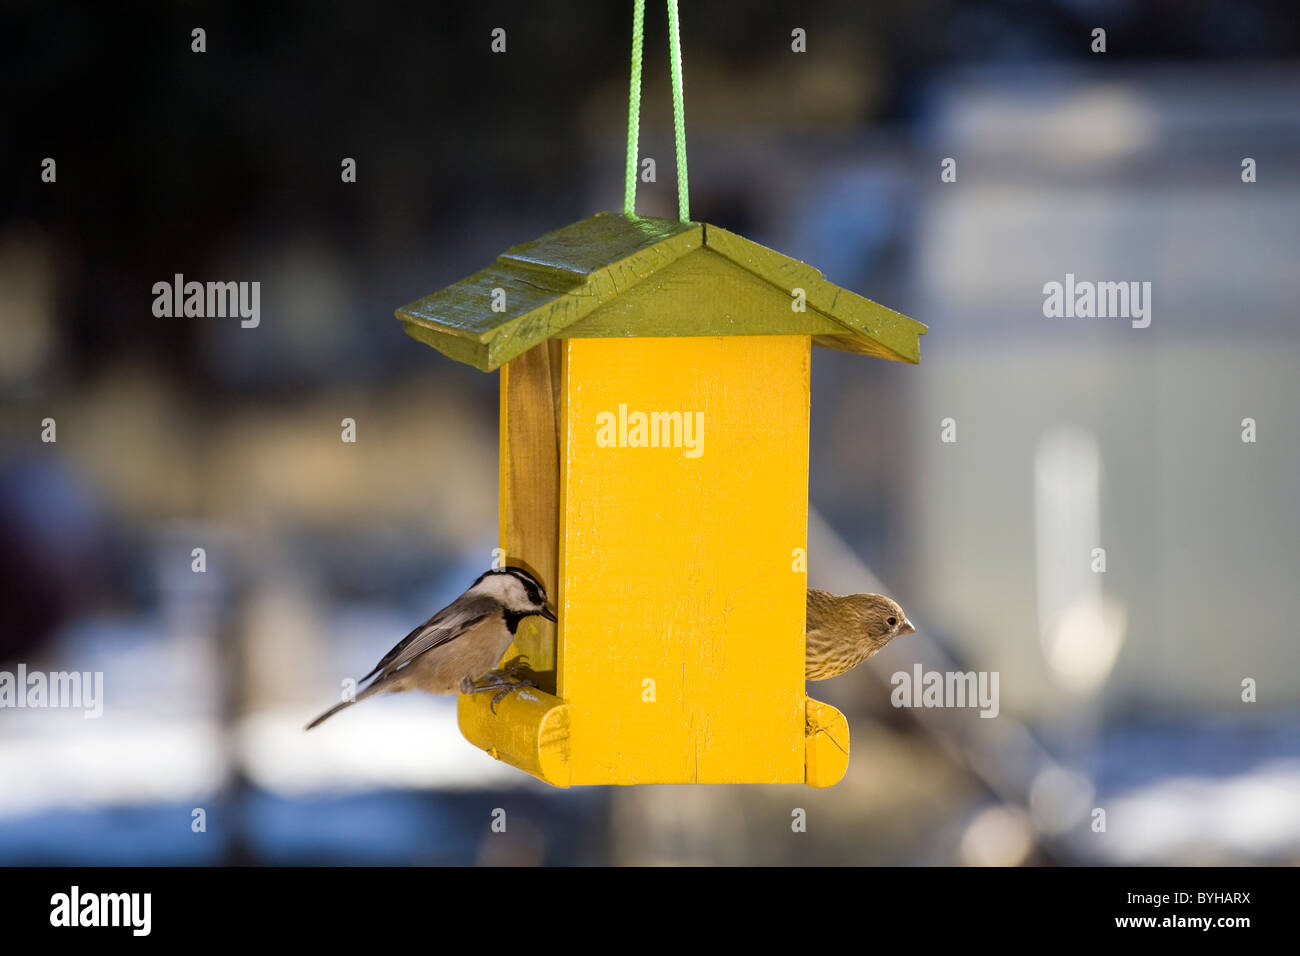 Un chickadee et une maison à partir d'une alimentation fince mangeoire jaune sur un jour d'hiver Banque D'Images